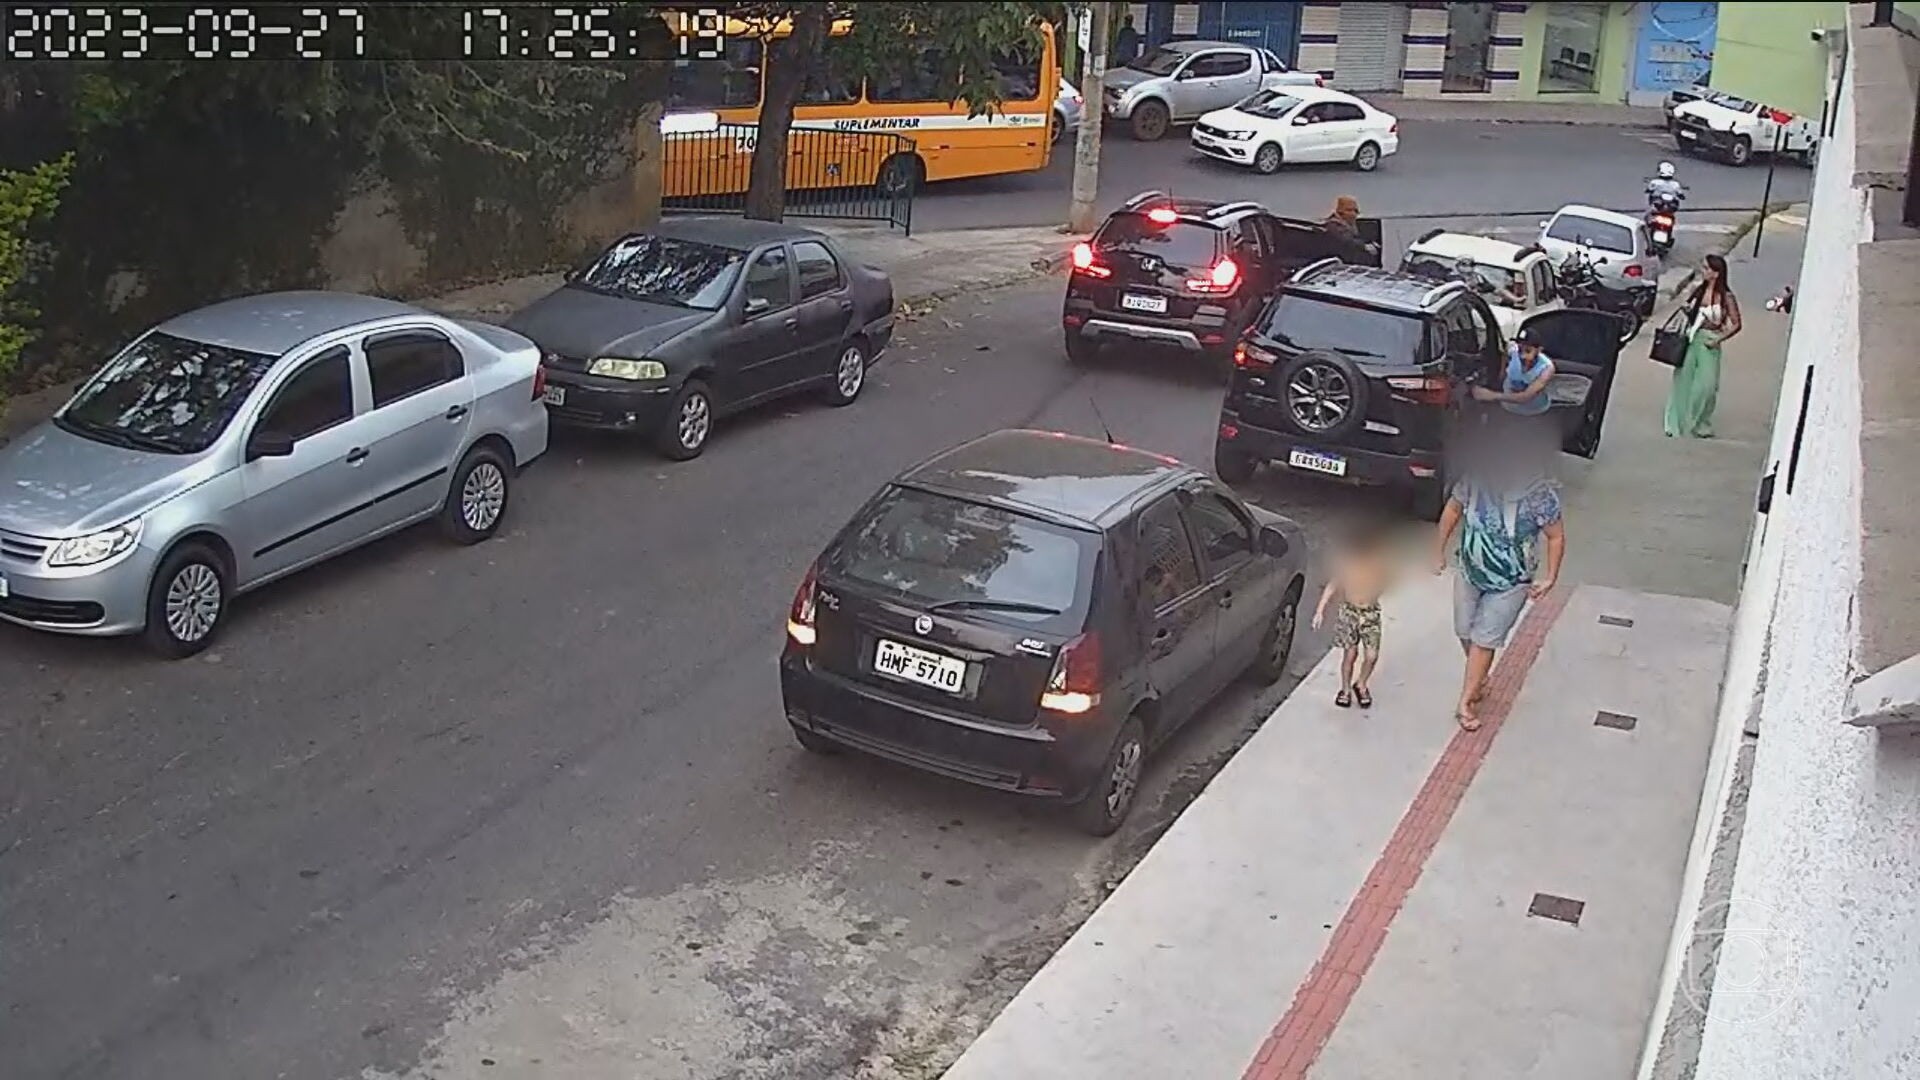 Criança de 2 anos é baleada em tentativa de assassinato em Belo Horizonte (MG)